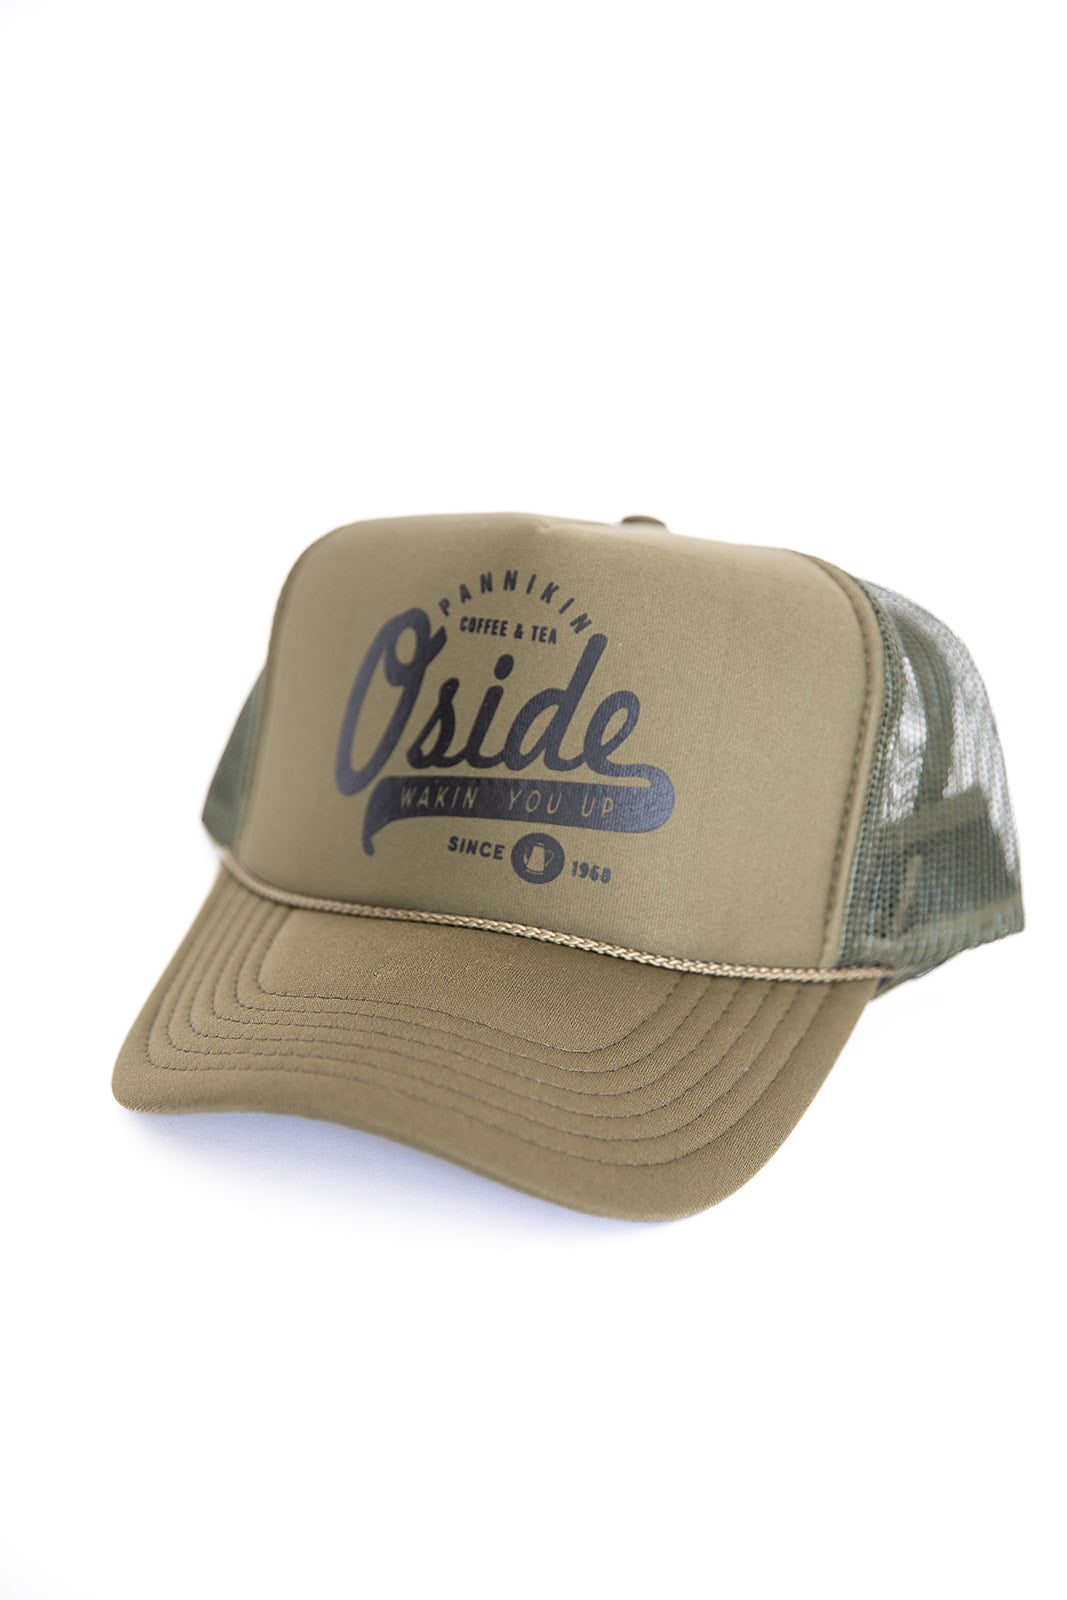 O'Side Trucker Hat